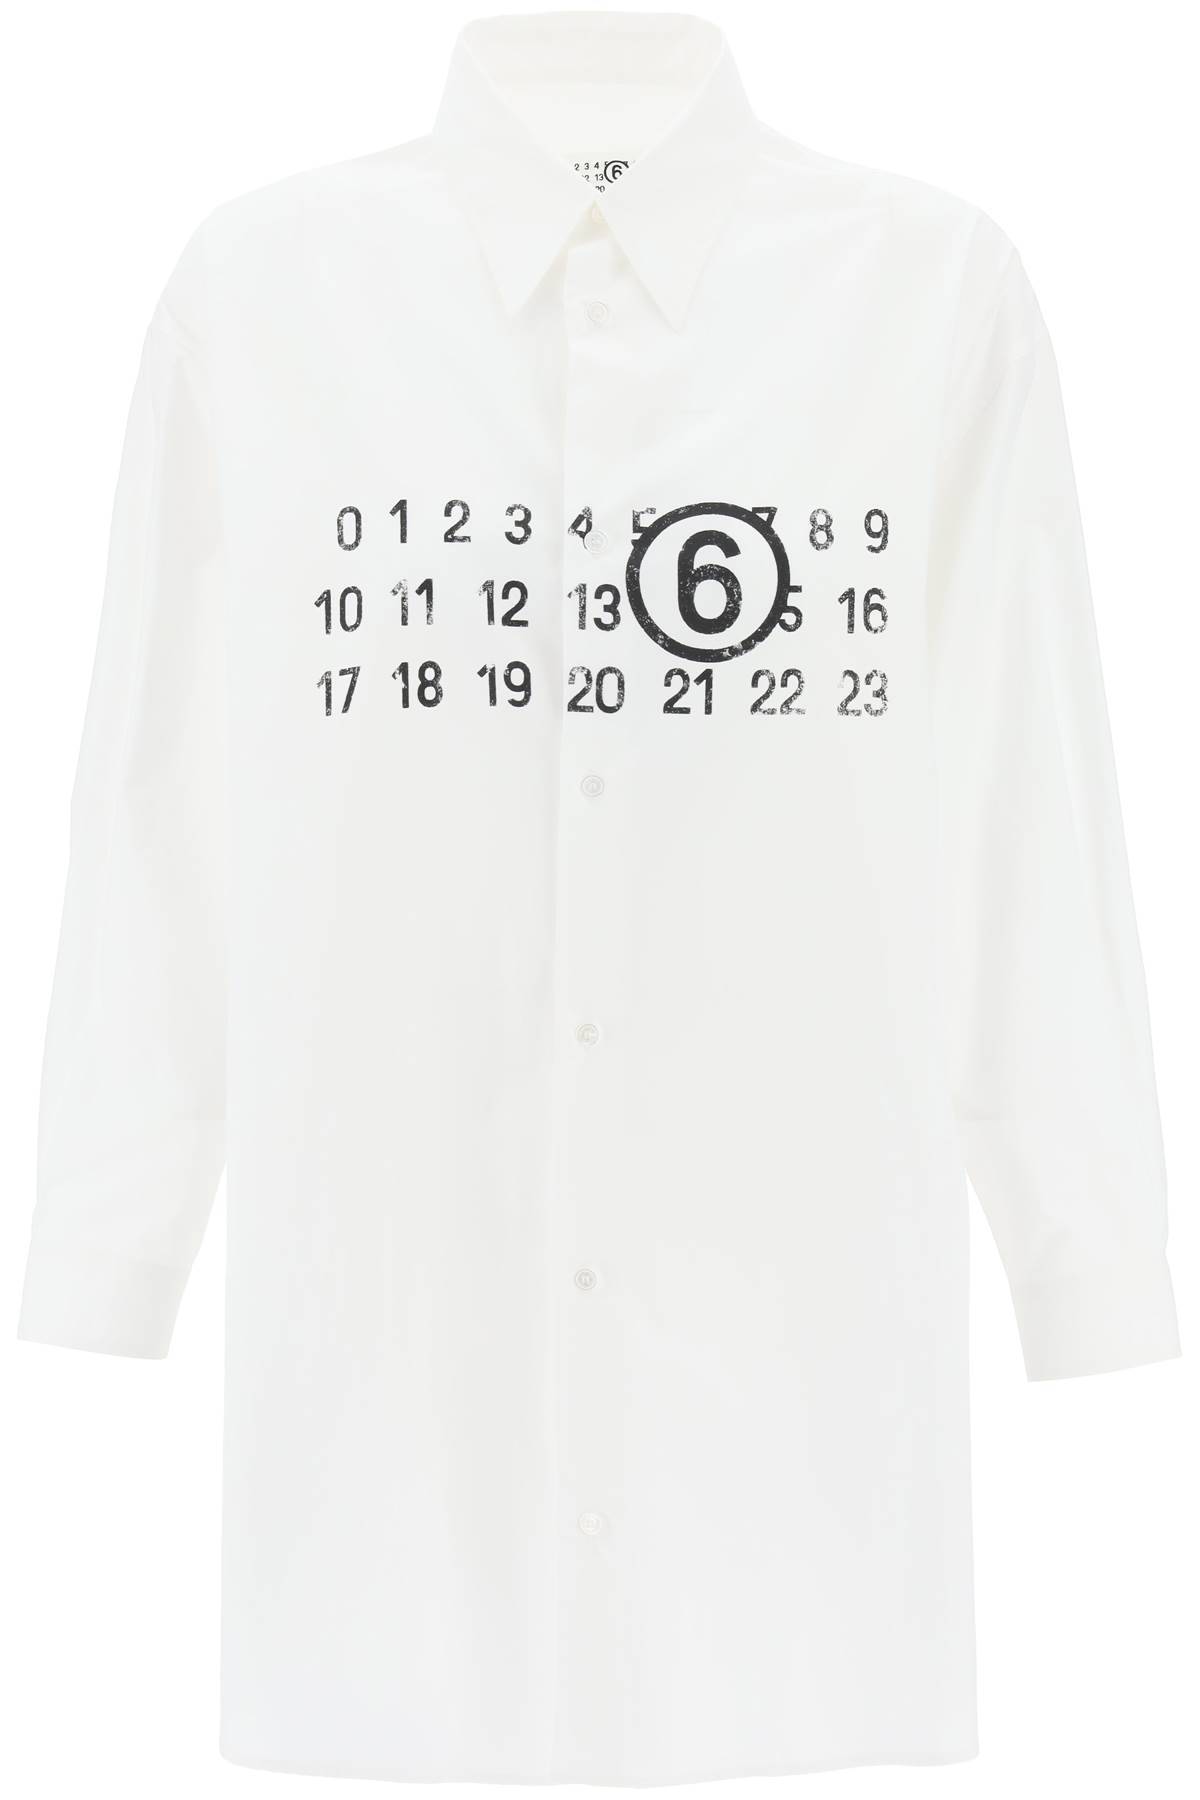 MM6 Maison Margiela MM6 MAISON MARGIELA shirt dress with numeric logo